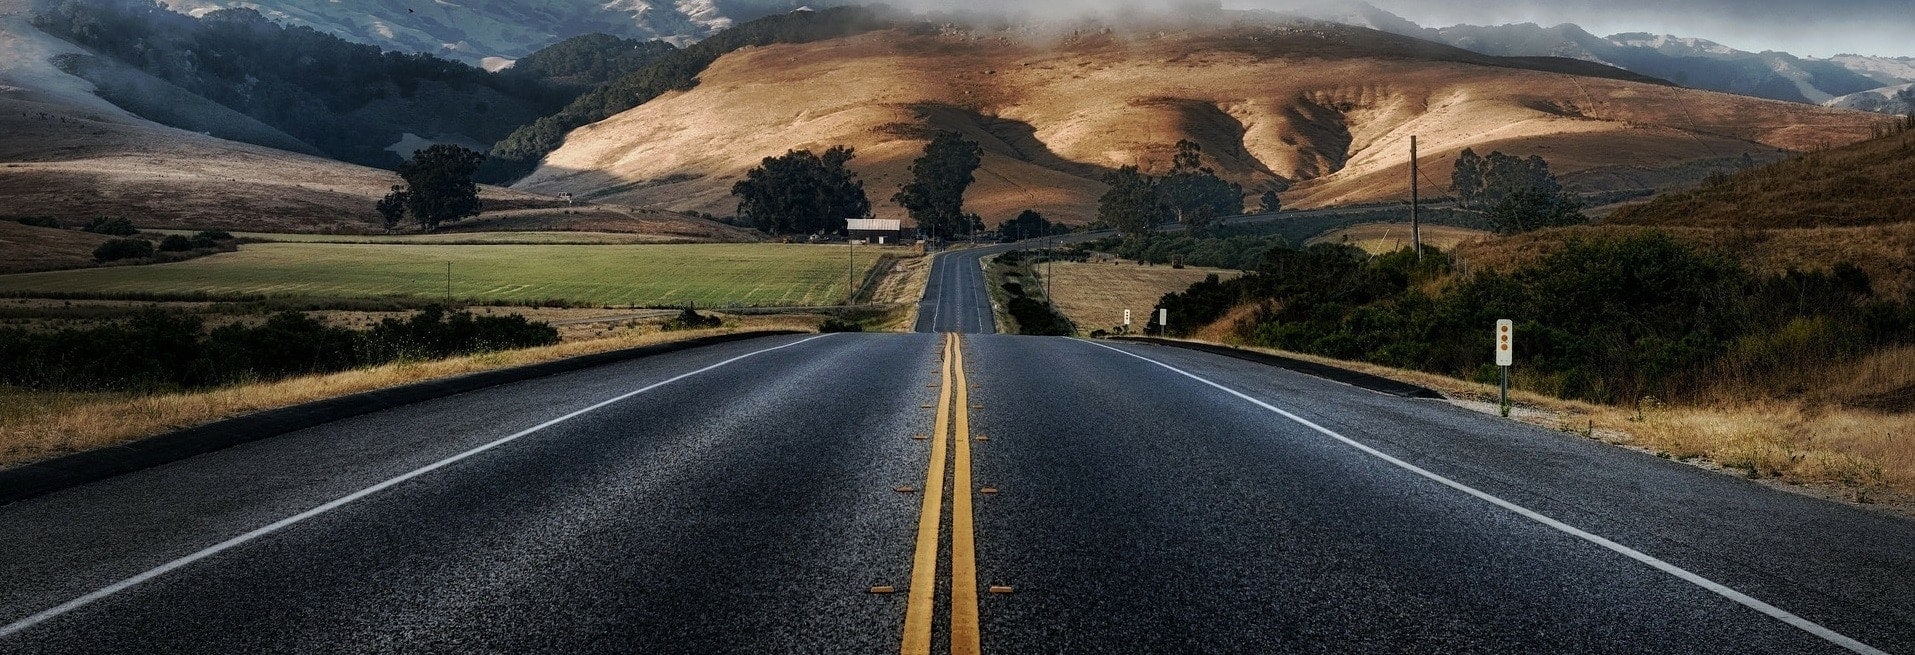 asfalto autorreparable careterra california-